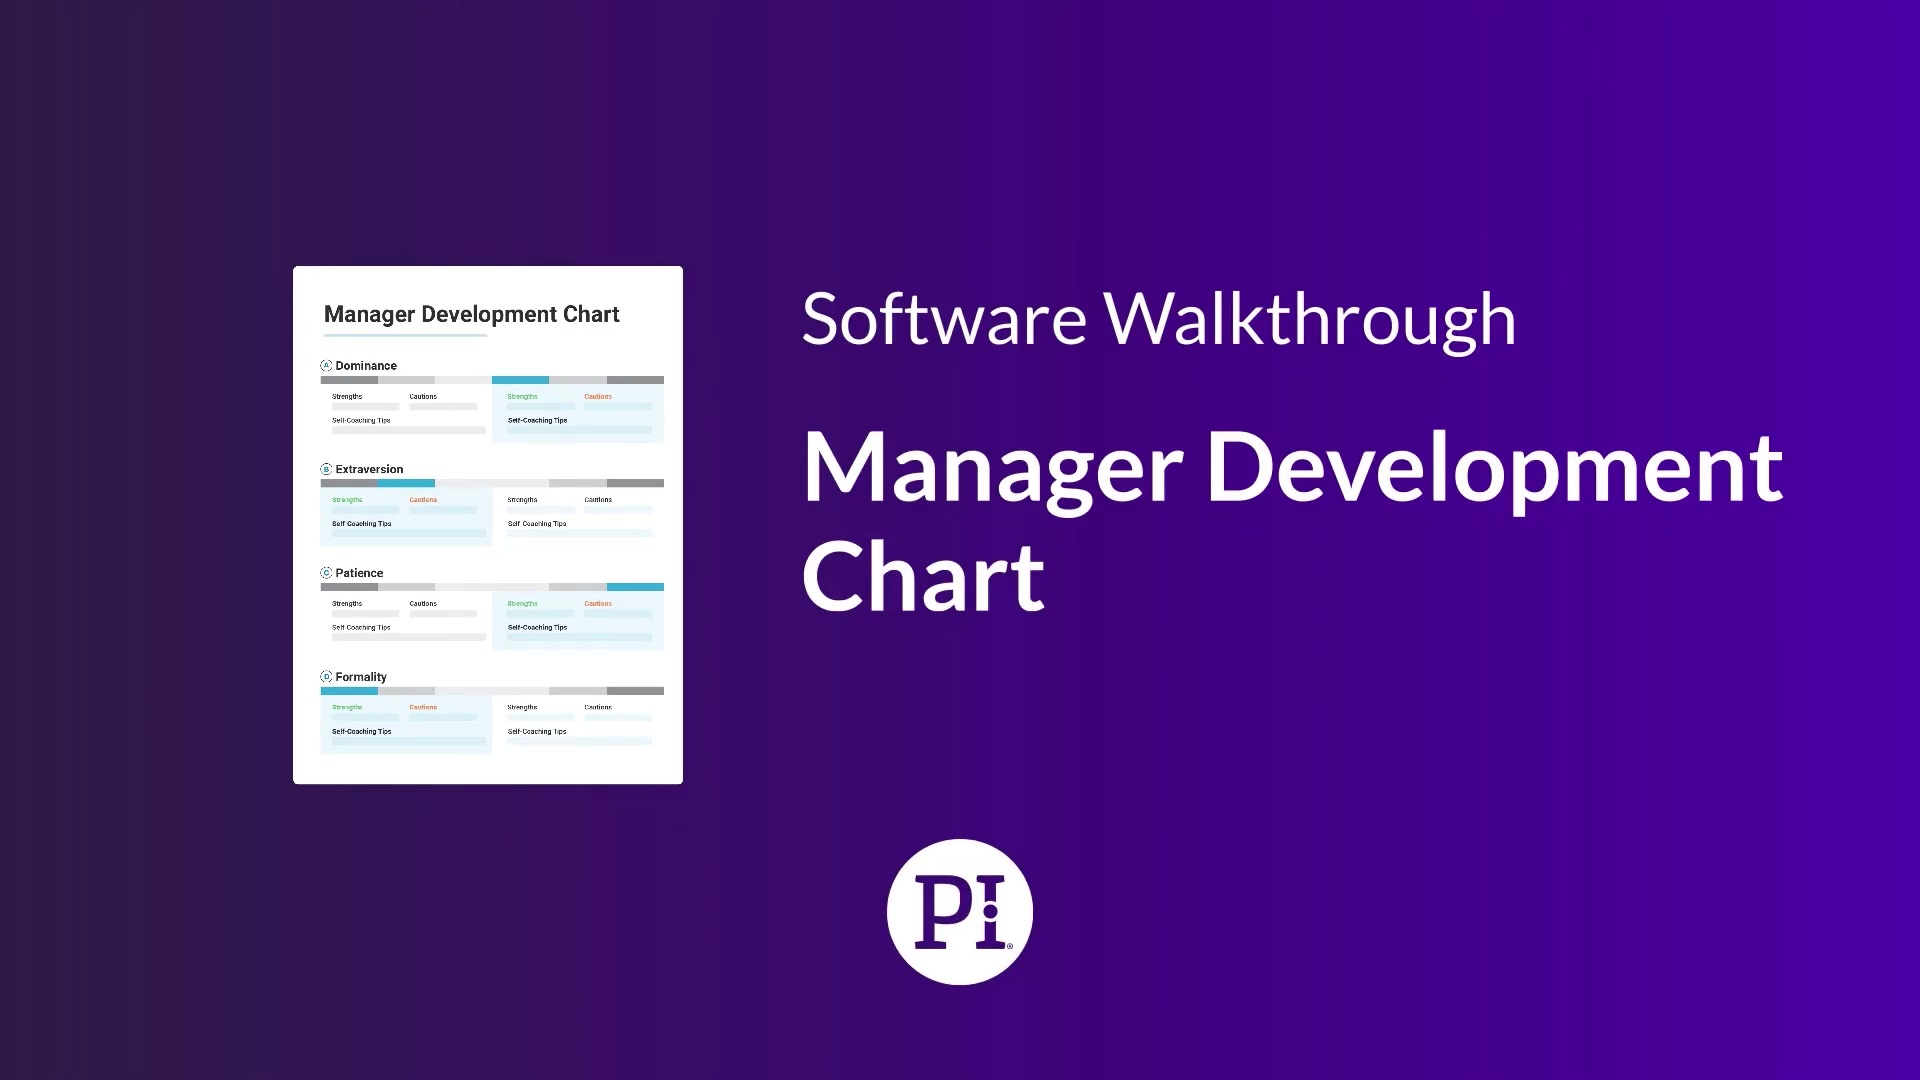 Manager Development Chart Walkthrough